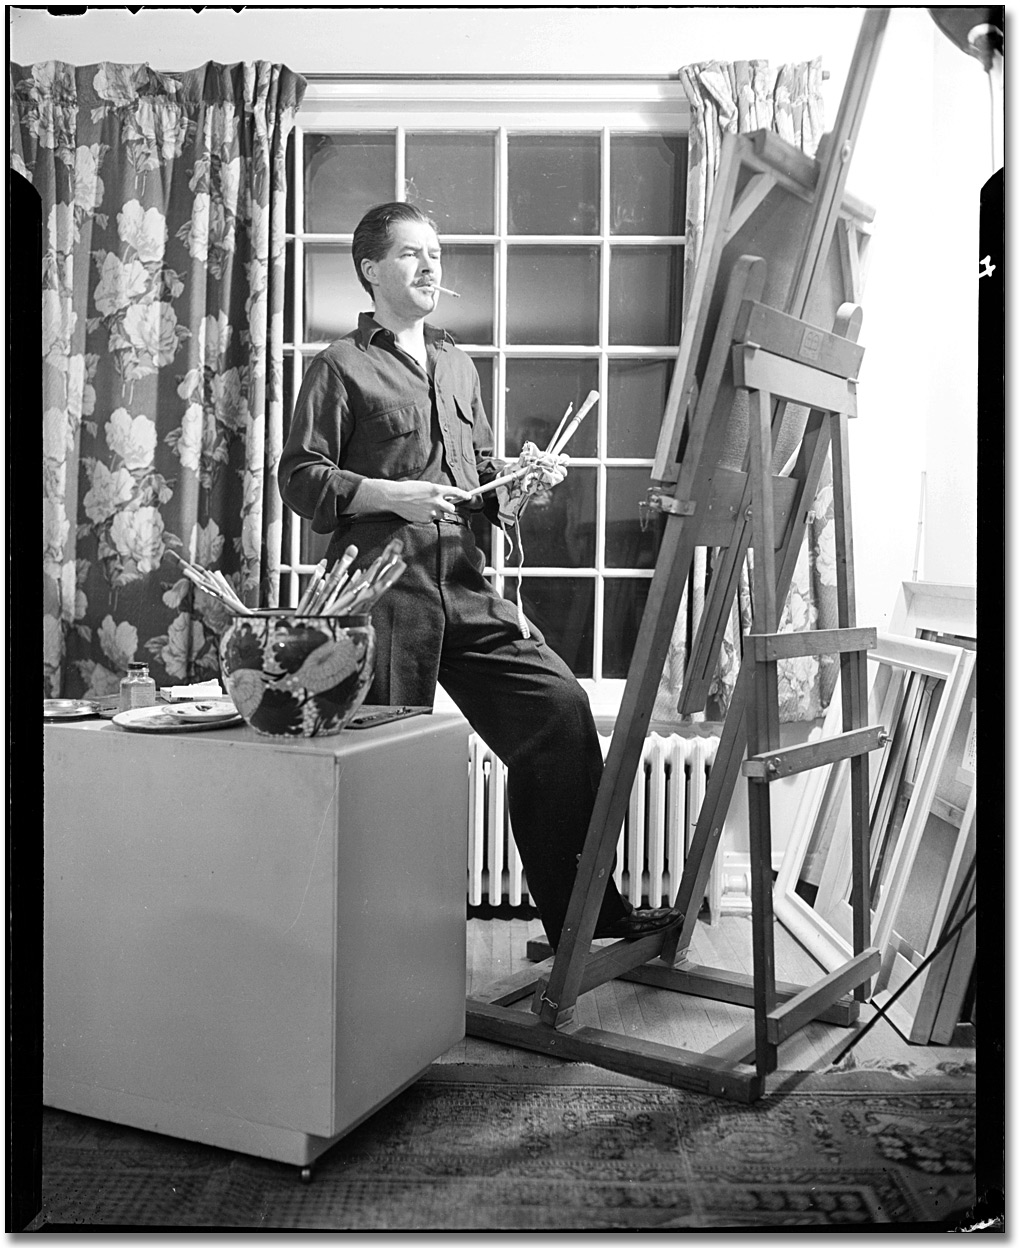 Photographie : Jack Bush au travail dans son studio, 1968